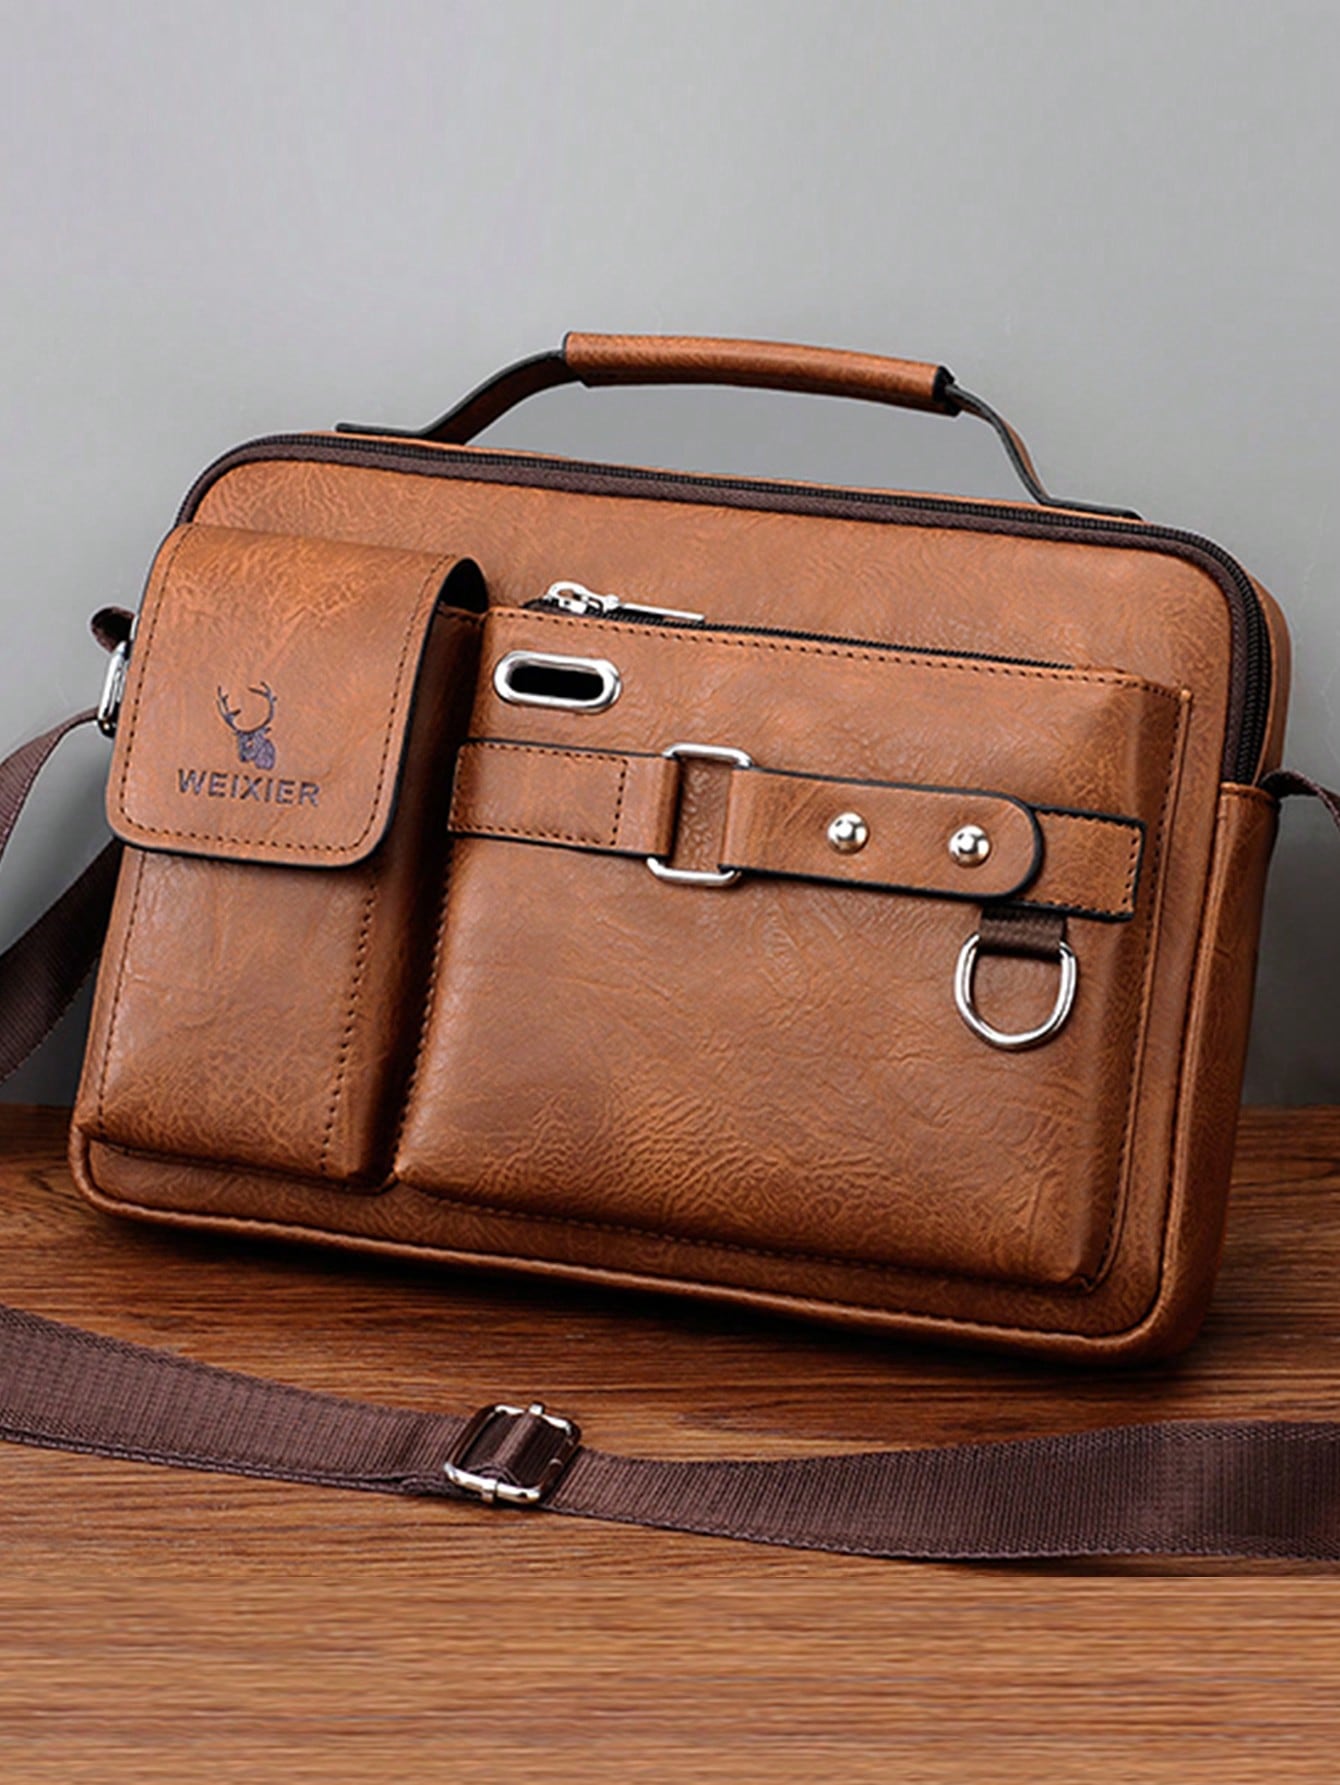 1 шт. сумка на одно плечо/сумка через плечо/деловой портфель/сумка для офиса/рабочего места, коричневый